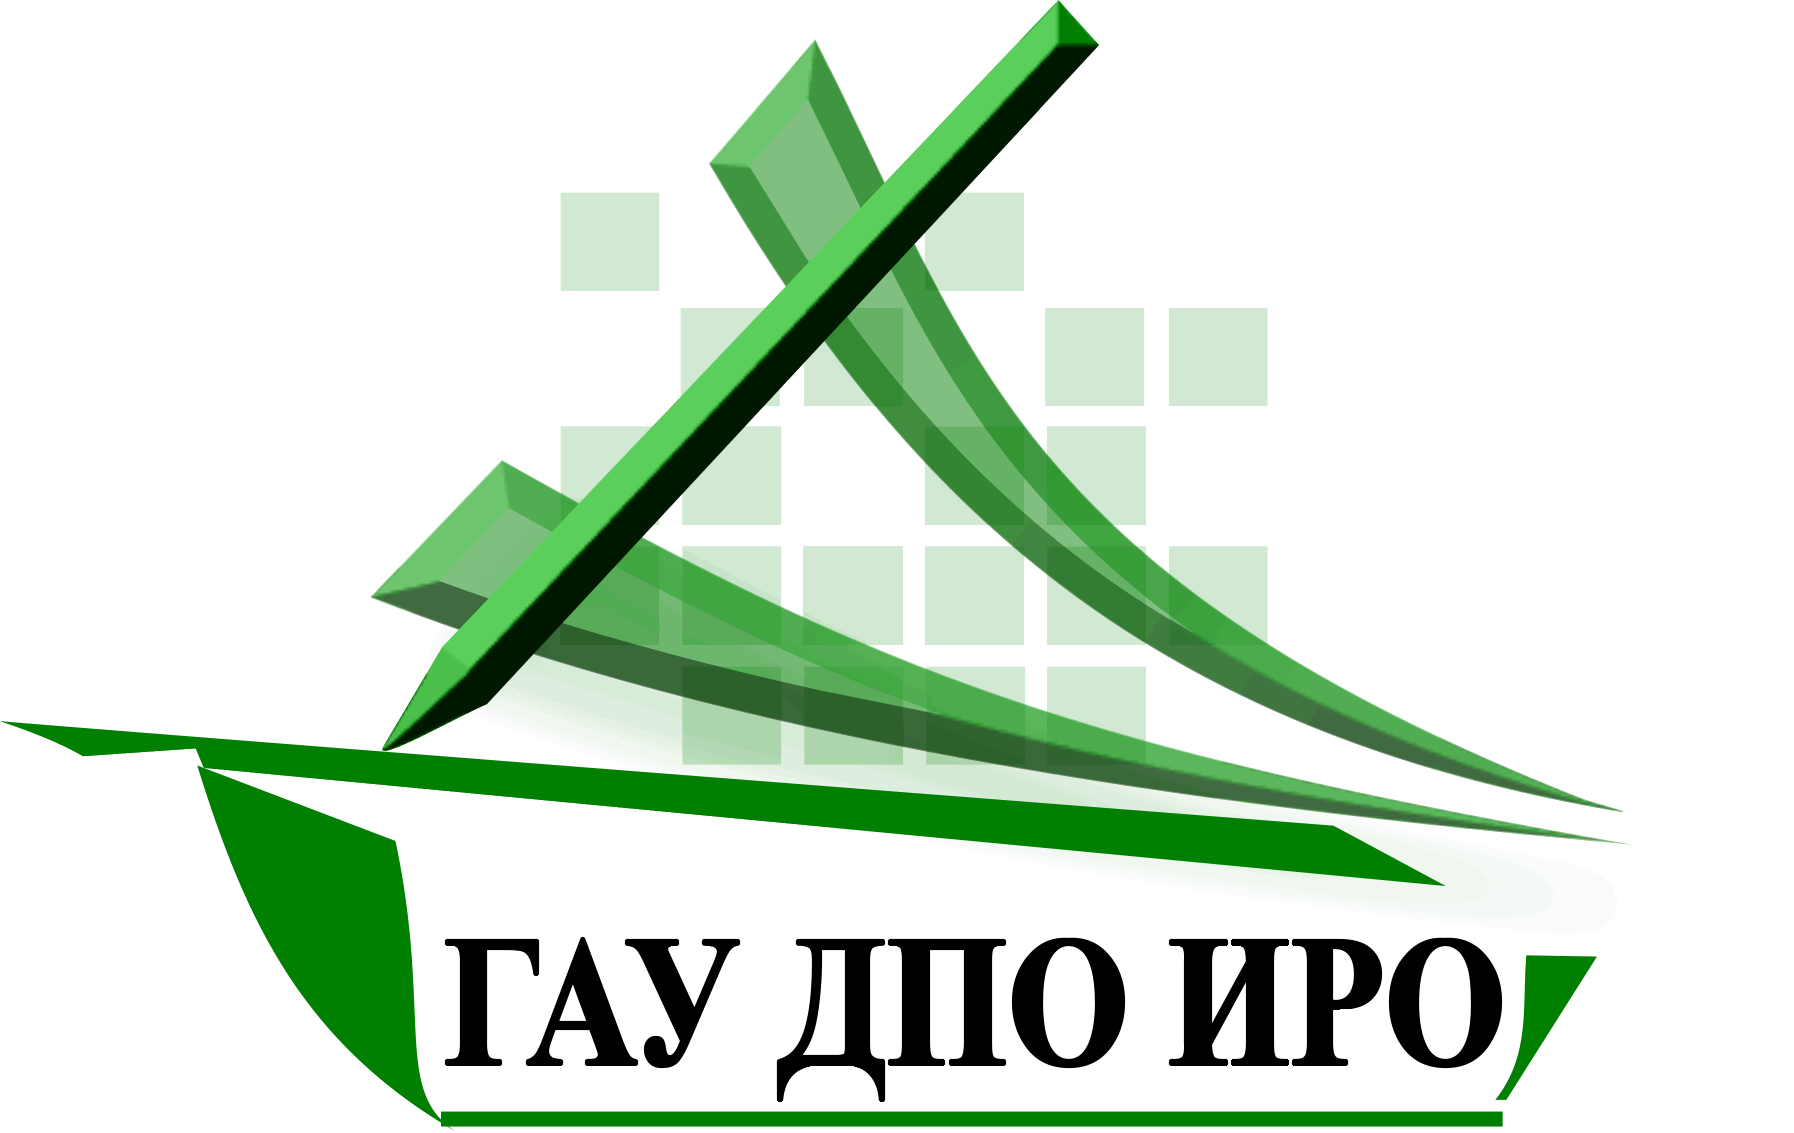 Иро38. ИРО Иркутской области. ГАУ ДПО ИРО логотип. Иркутск ИРО логотип.